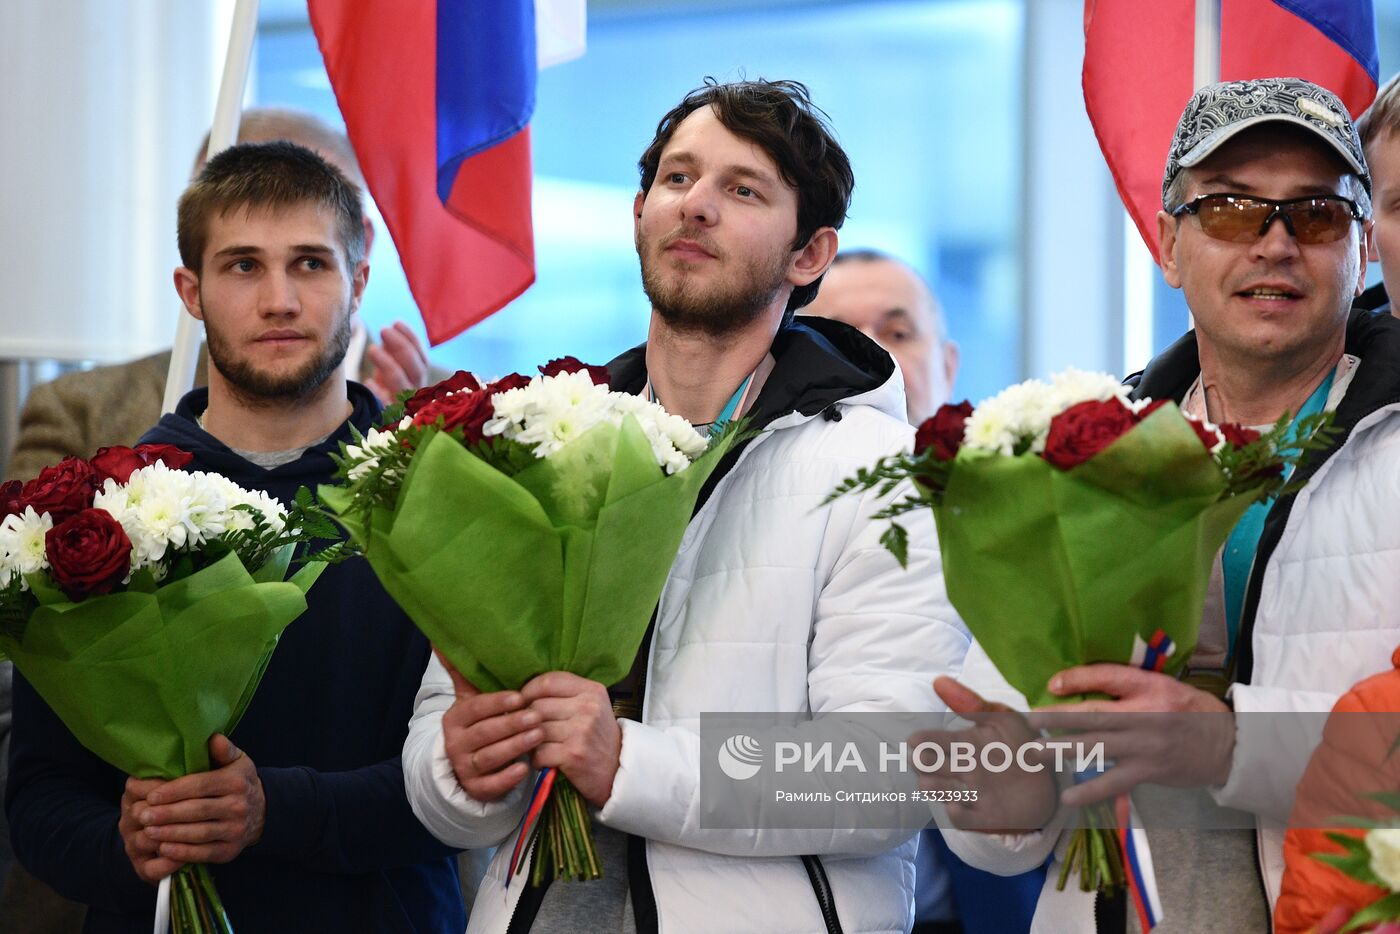 Встреча российских спортсменов - участников Паралимпиады 2018